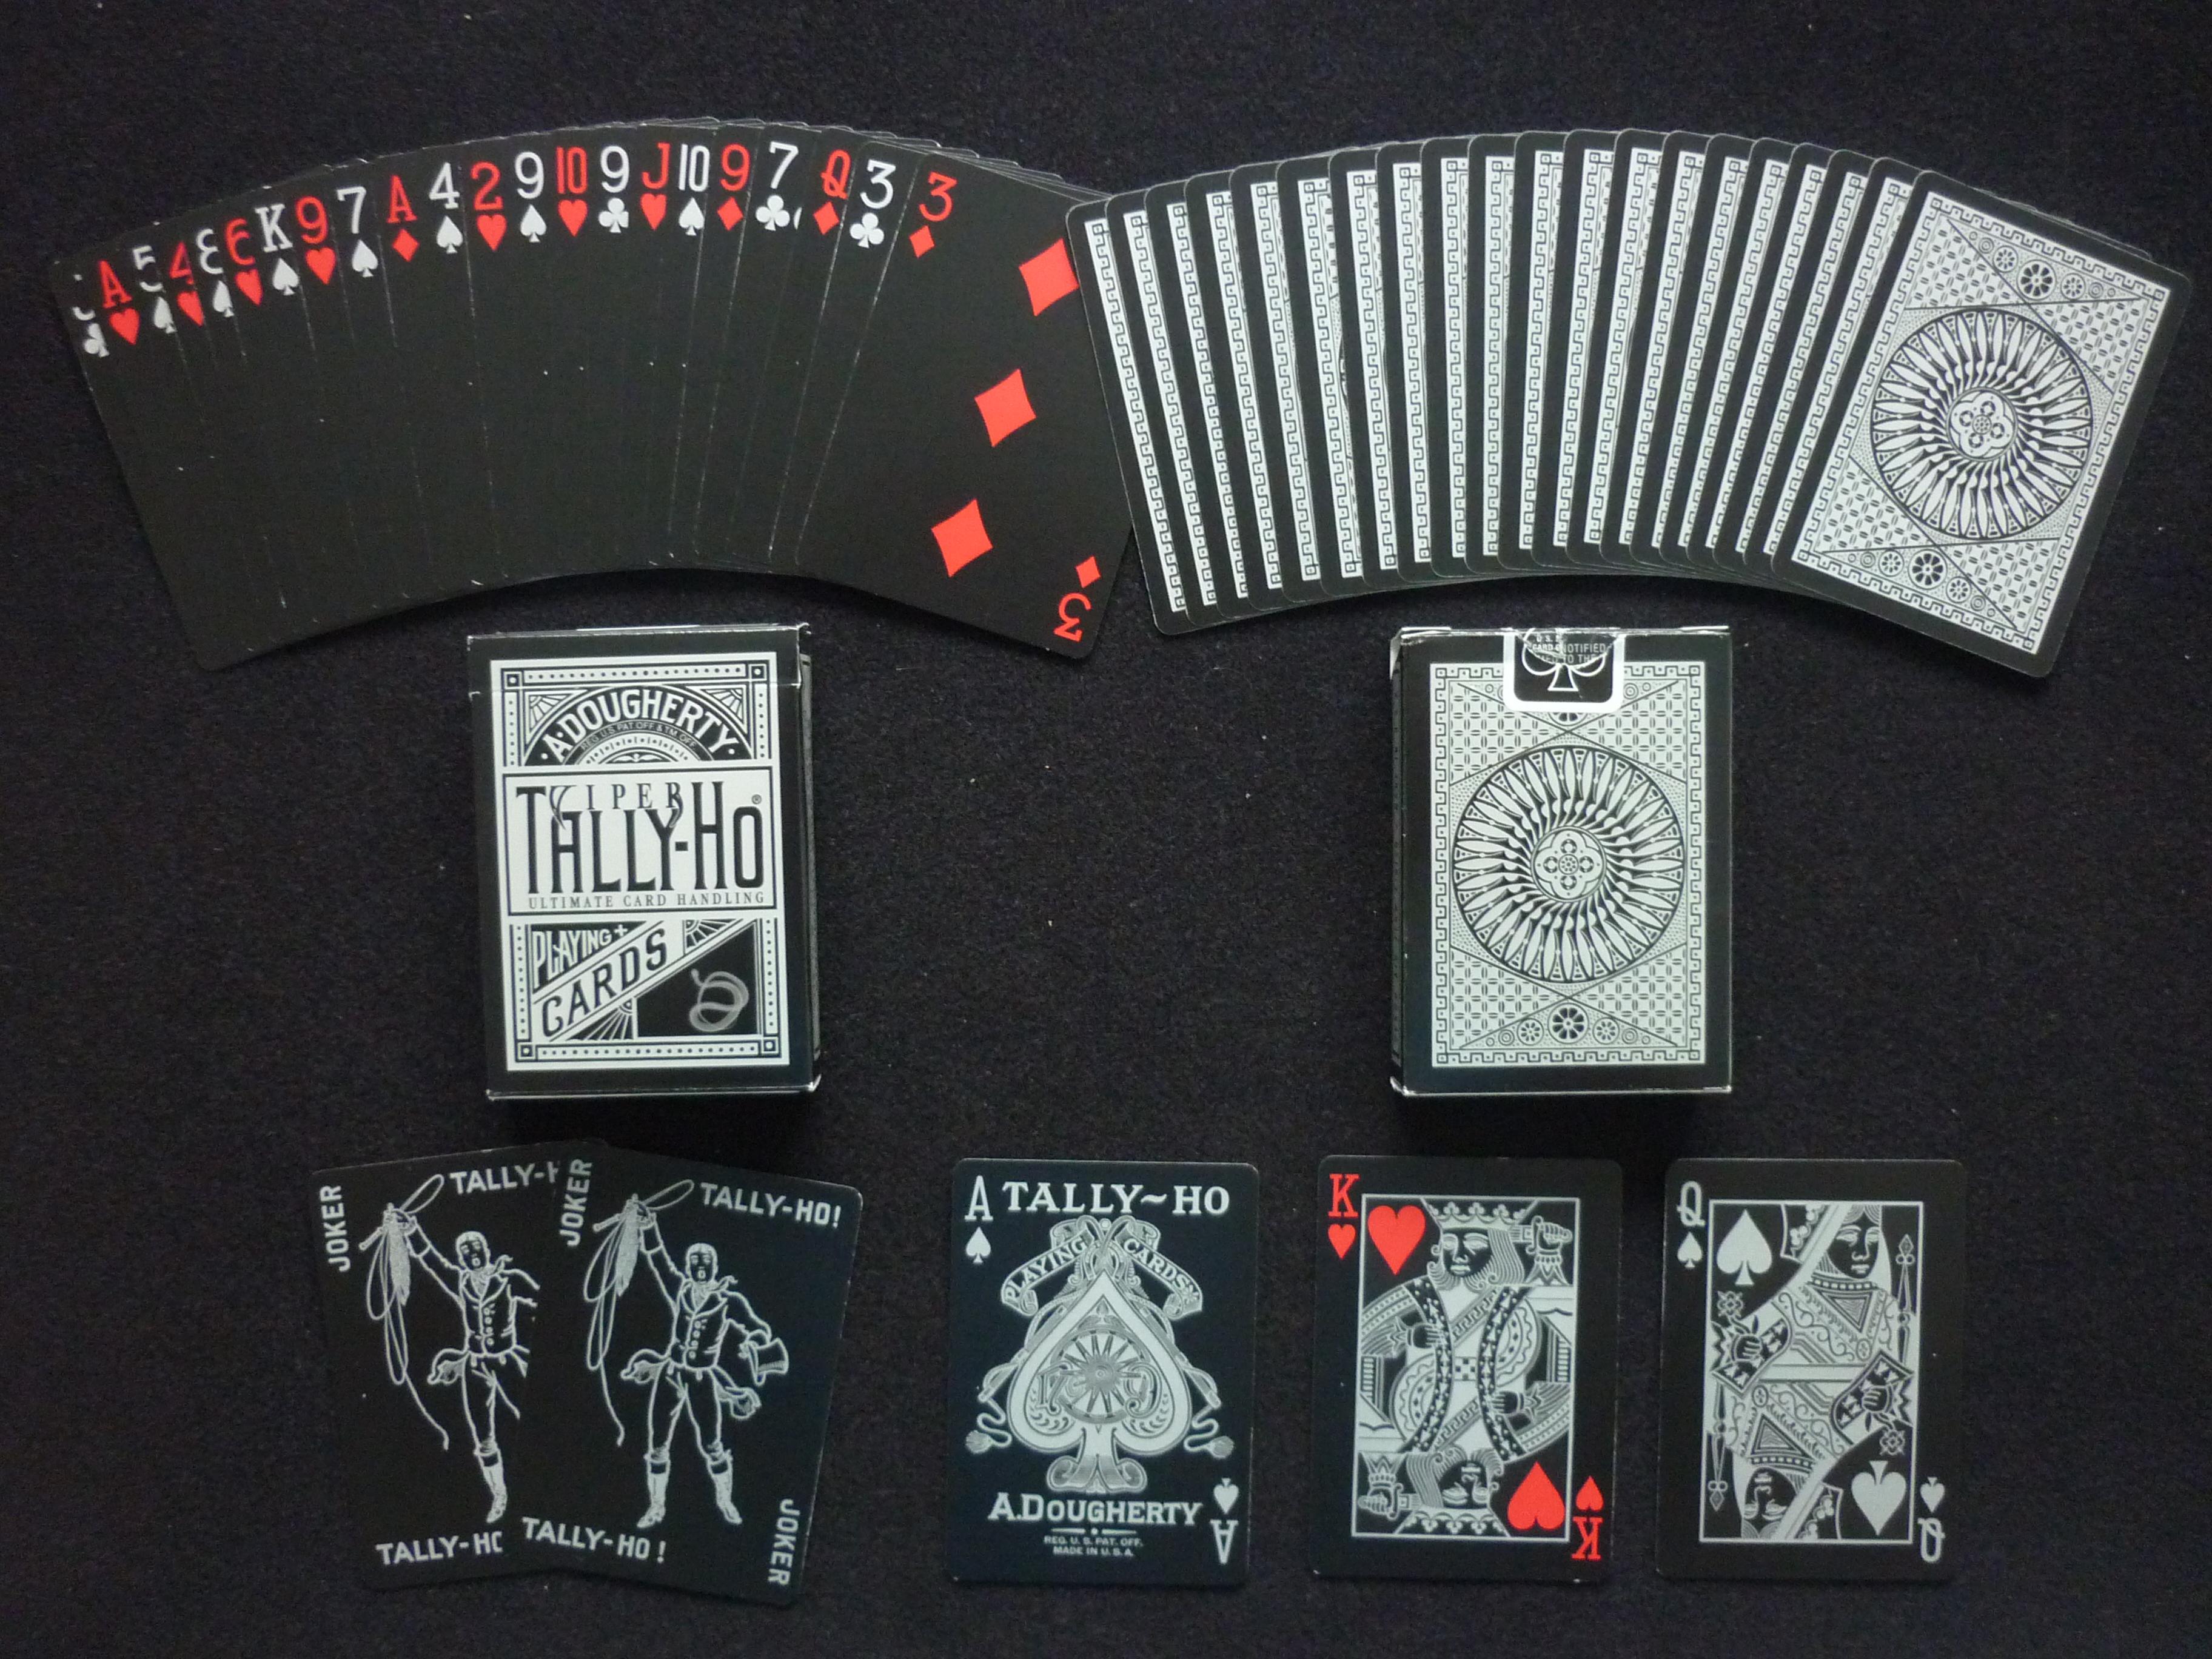 图片素材 : 玩, 红, 黑色, 标签, 赌博, 小丑, 运气, 赢得, 利润, 扑克牌, 纸牌游戏 3444x2435 ...